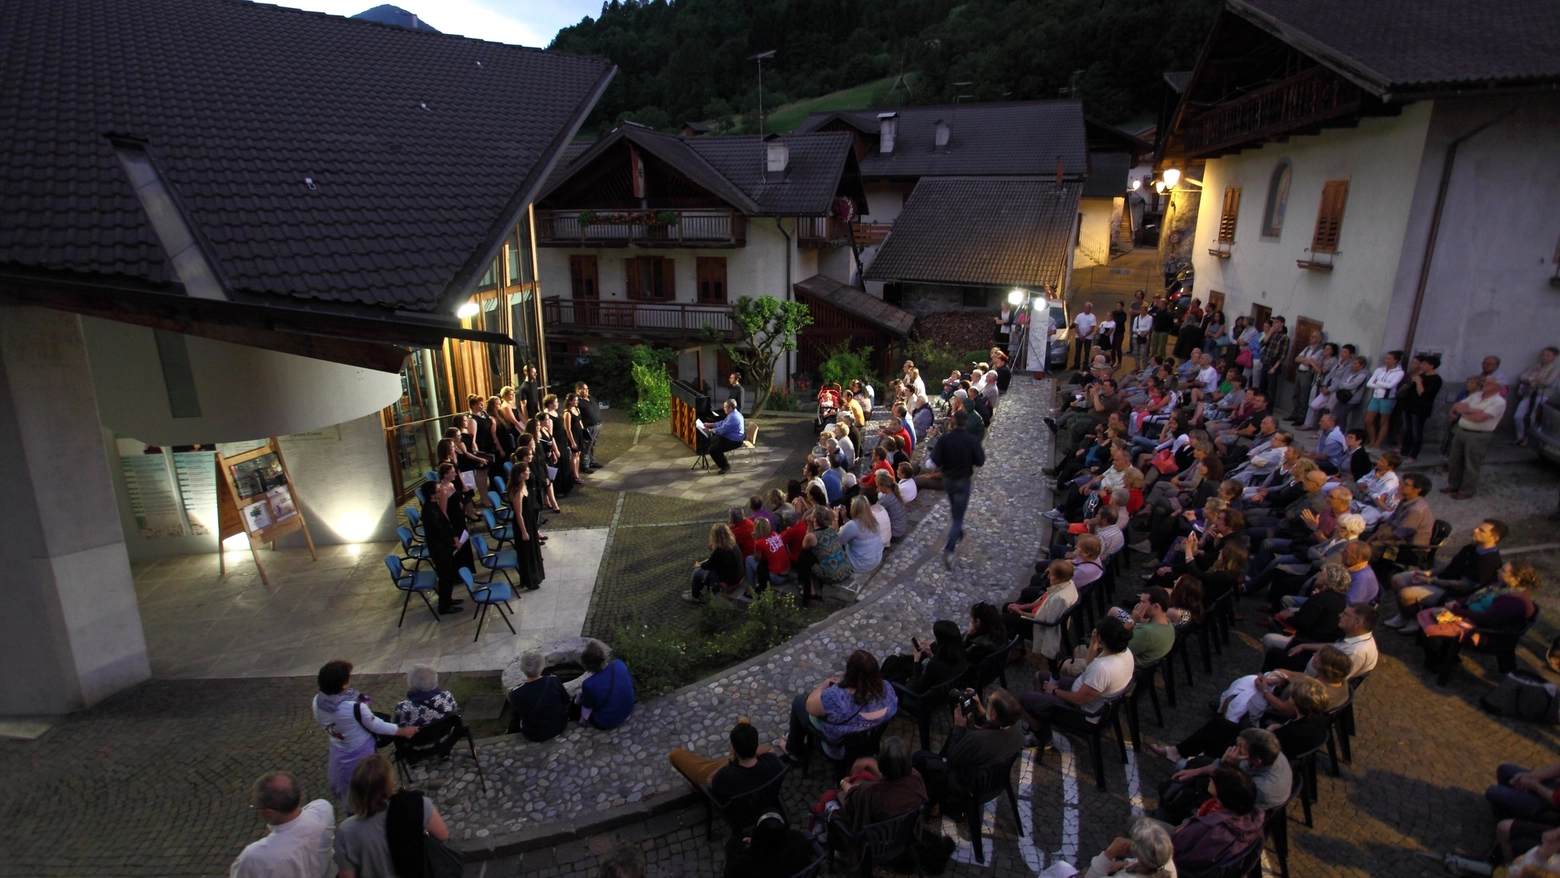 Nella Valle del Primiero un ricco calendario di concerti fino al 28 luglio. Appuntamento con l’opera lirica, la musica classica, i musical e una sezione dedicata alla danza